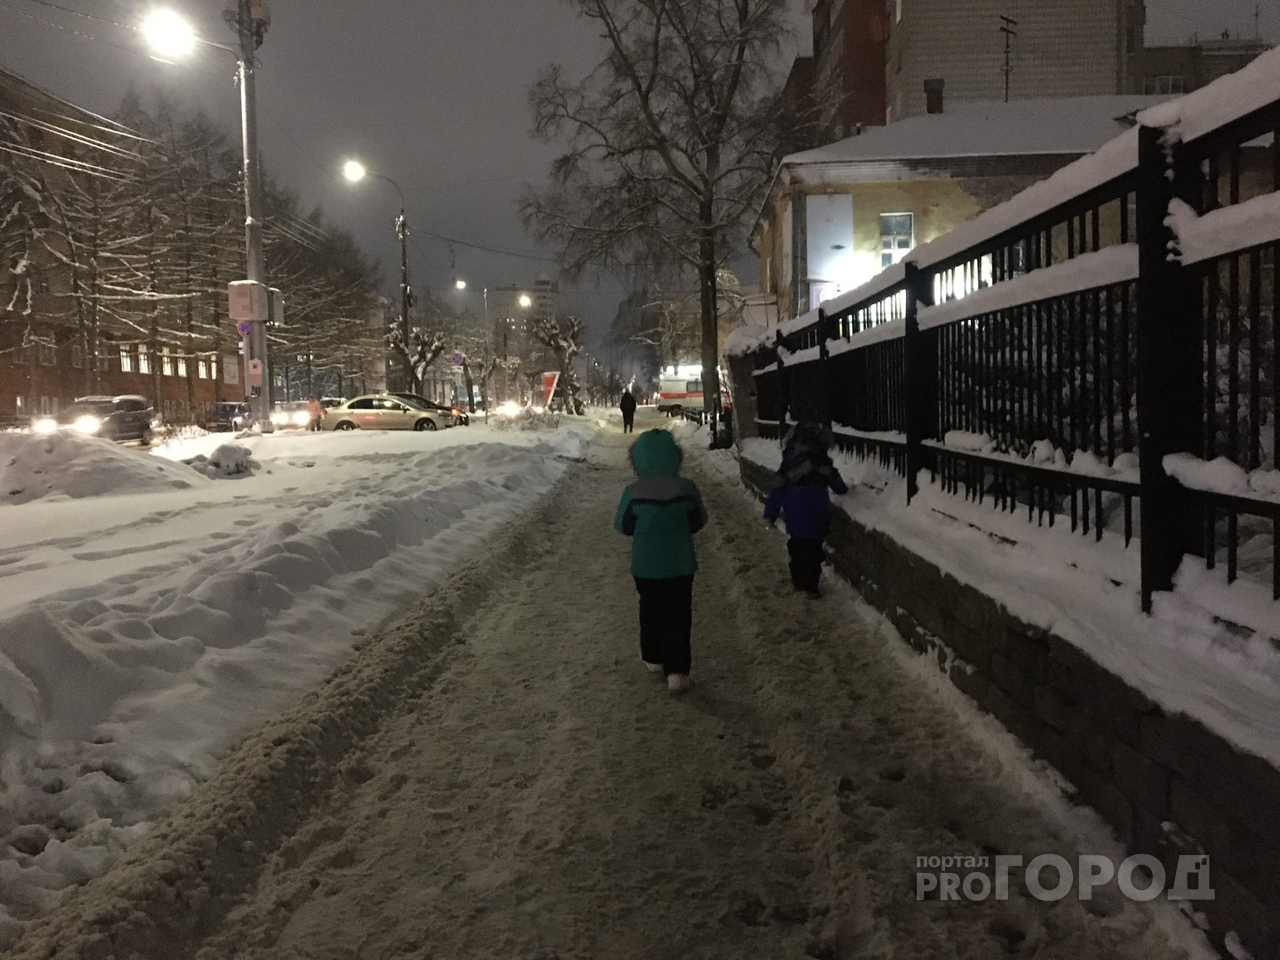 Морозы и снегопад: синоптики рассказали о погоде в Кирове на неделю